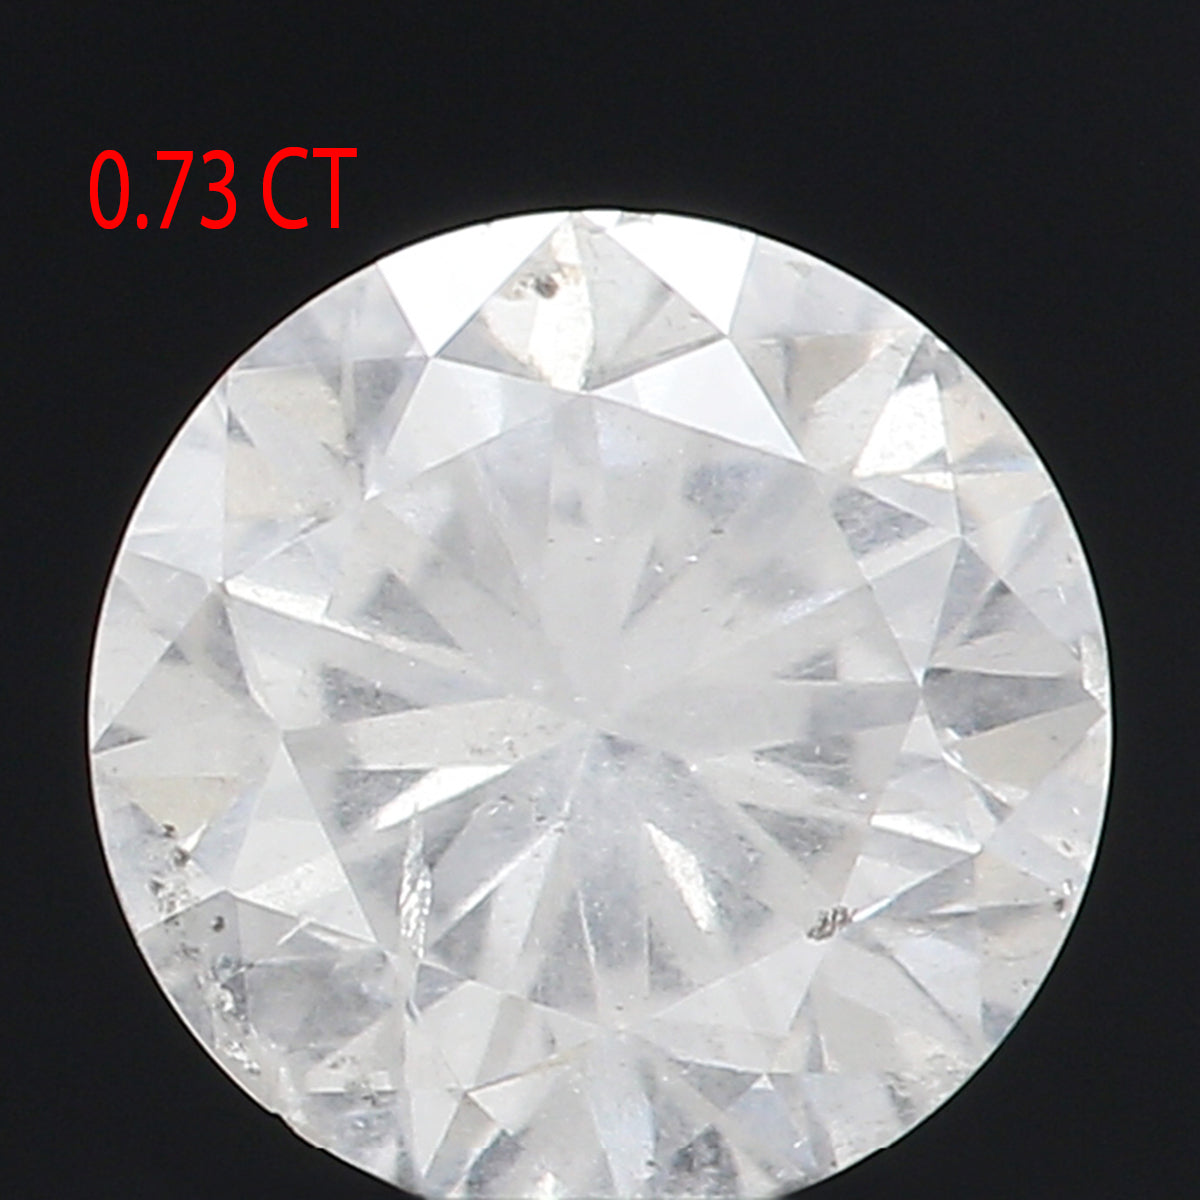 0.73 Ct Natural Loose Diamond, White Diamond, Round Diamond, Round Brilliant Cut Diamond, Sparkling Diamond, Rustic Diamond KDL318